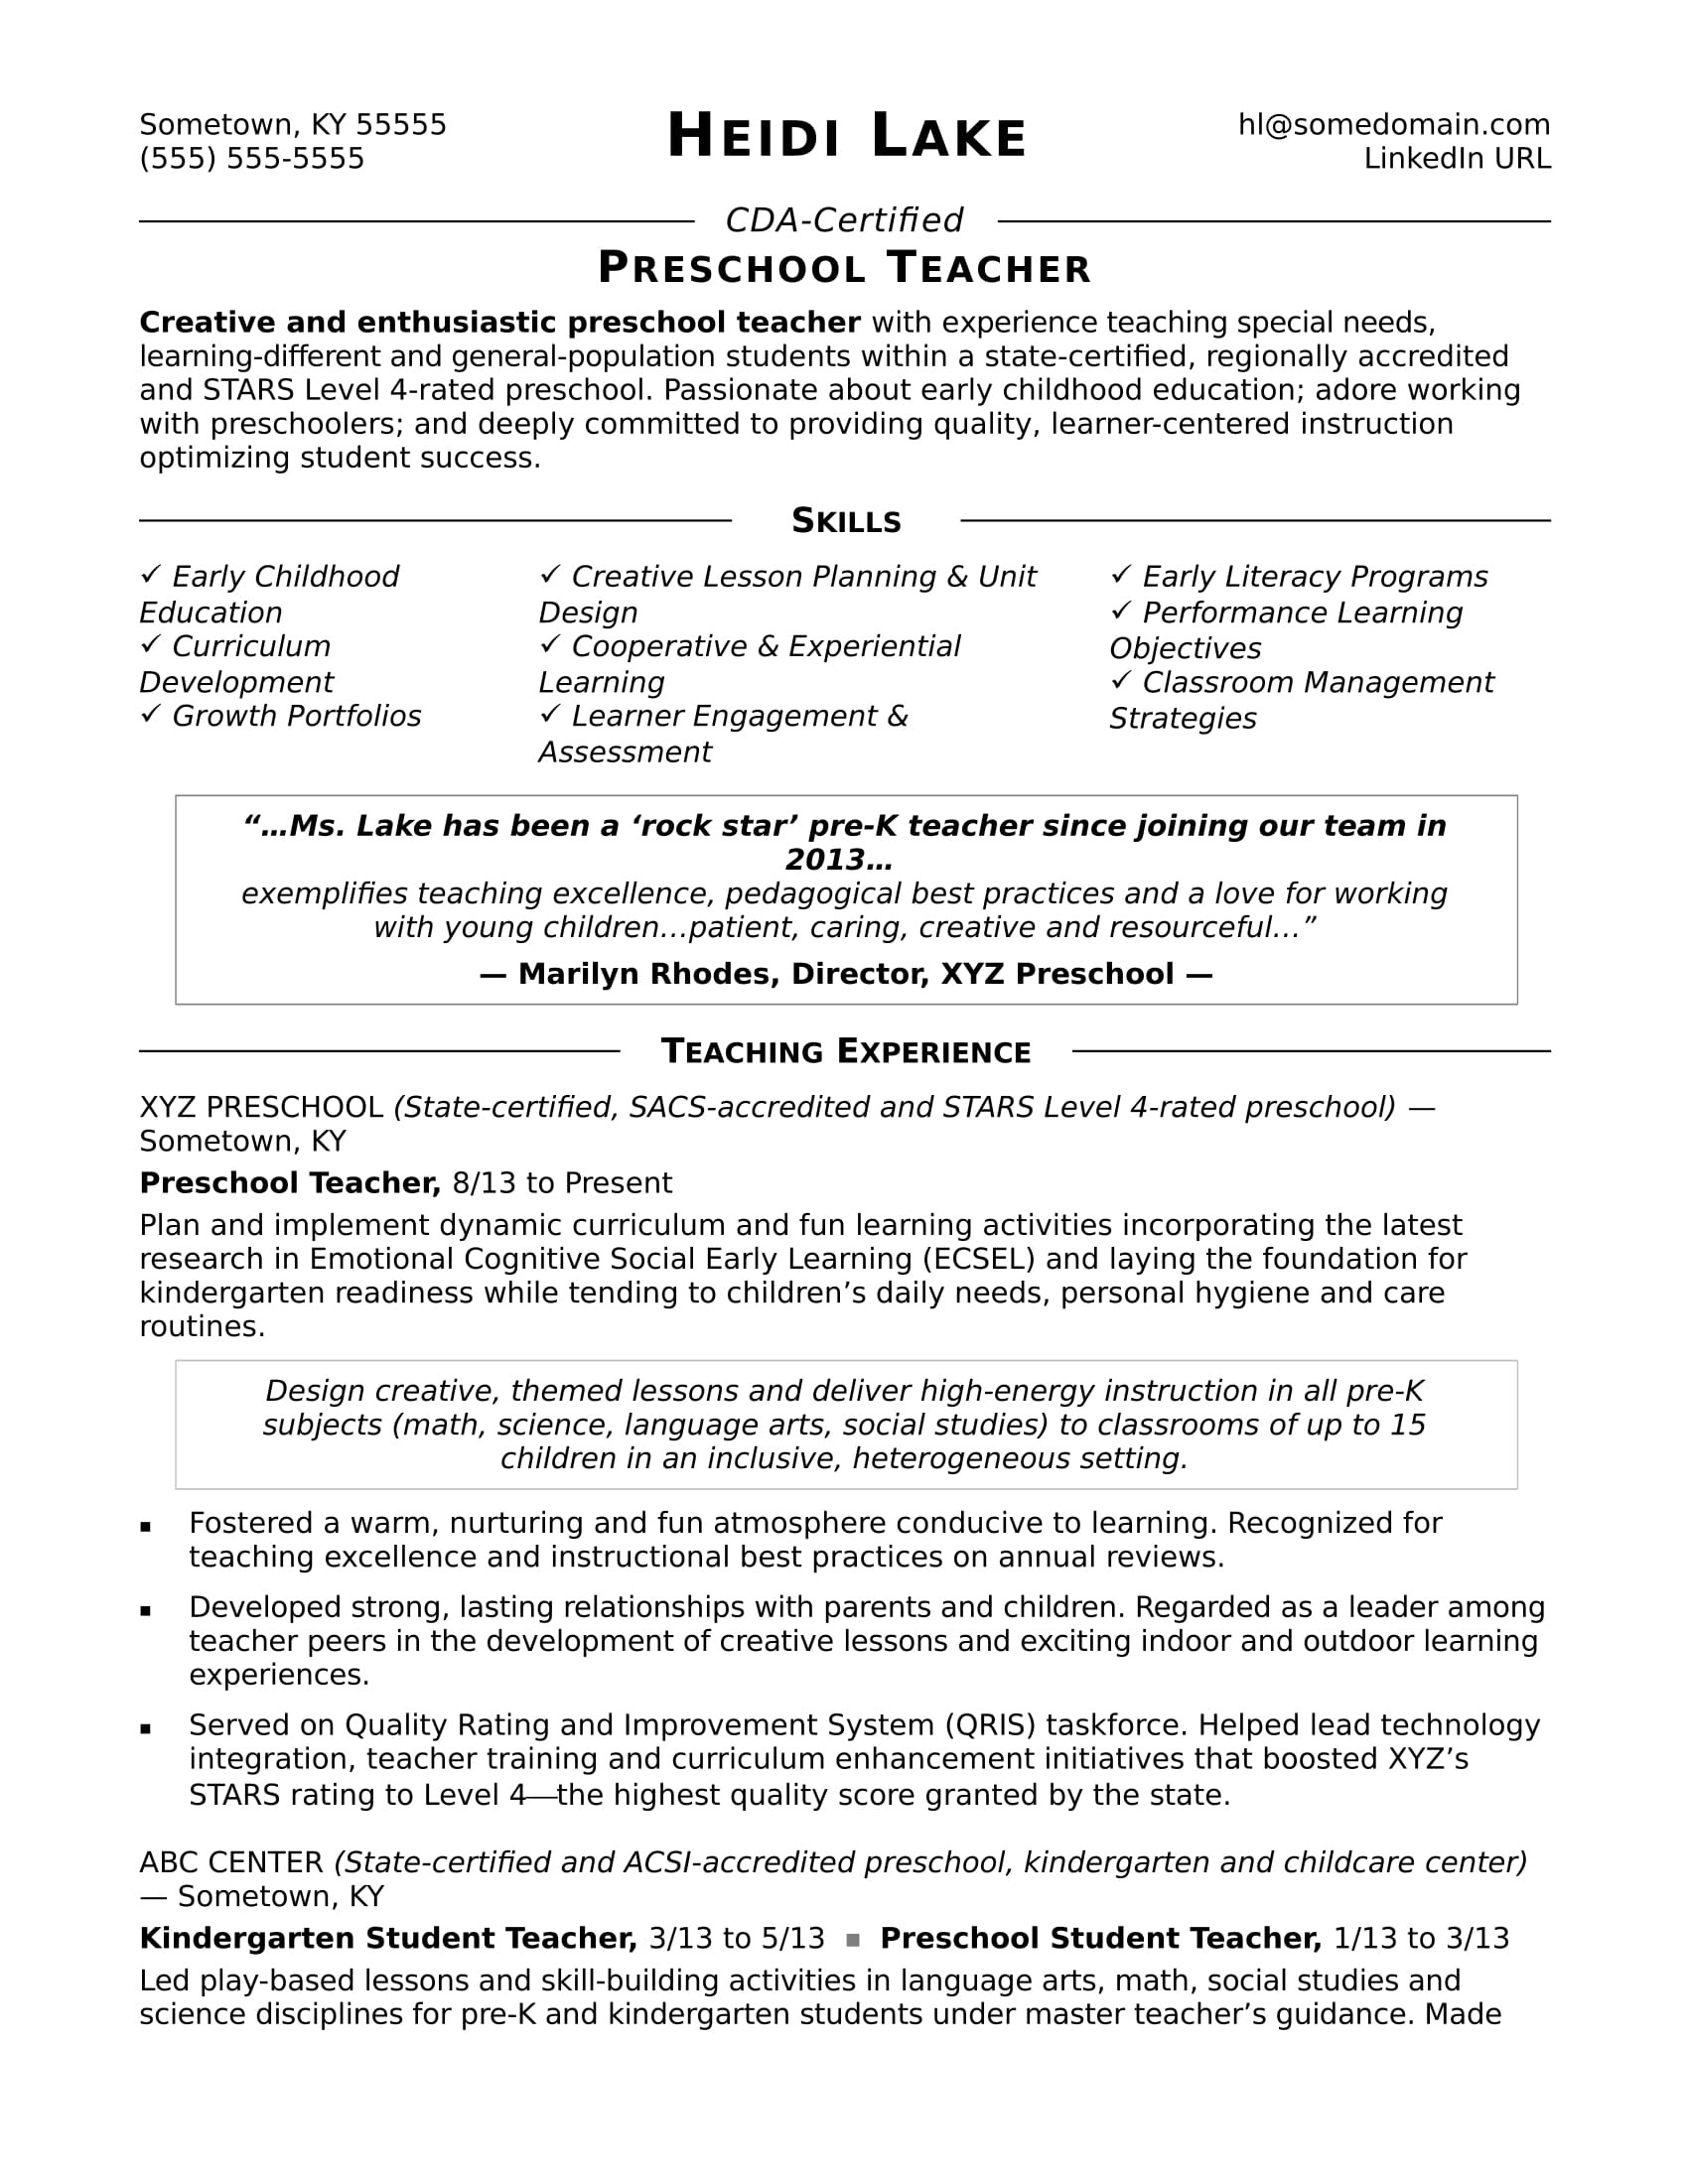 Samples Of Lead Teacher for Pre K Resume Description Preschool Teacher Resume Sample Monster.com